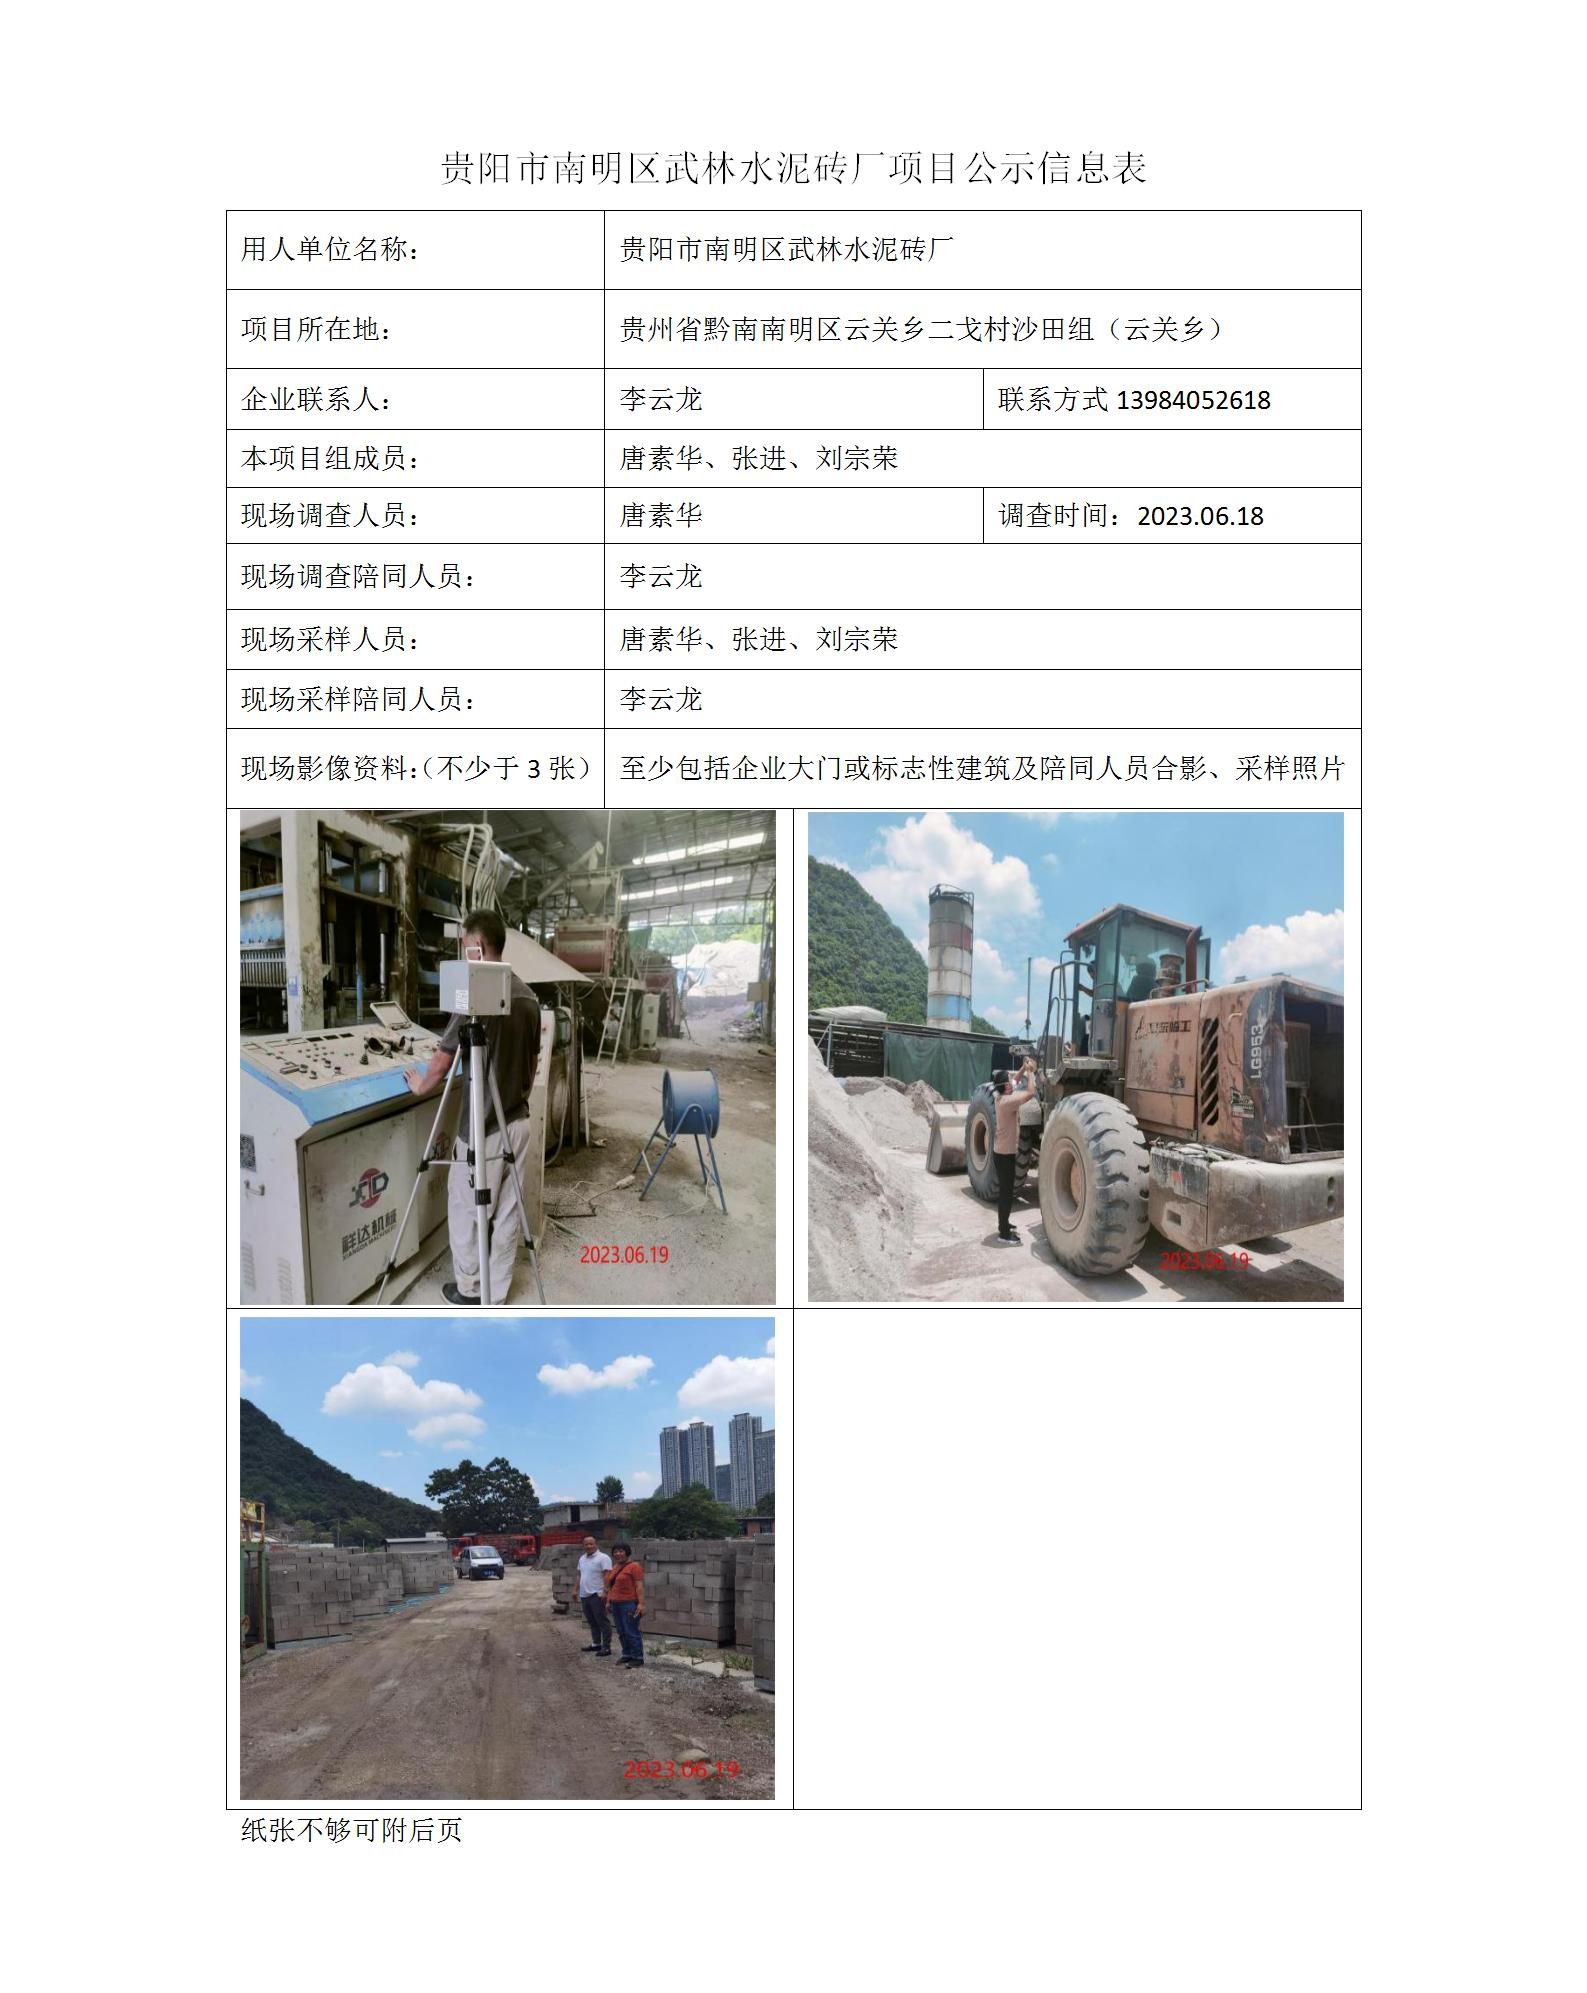 贵阳市南明区武林水泥砖厂项目公示信息表_01.jpg